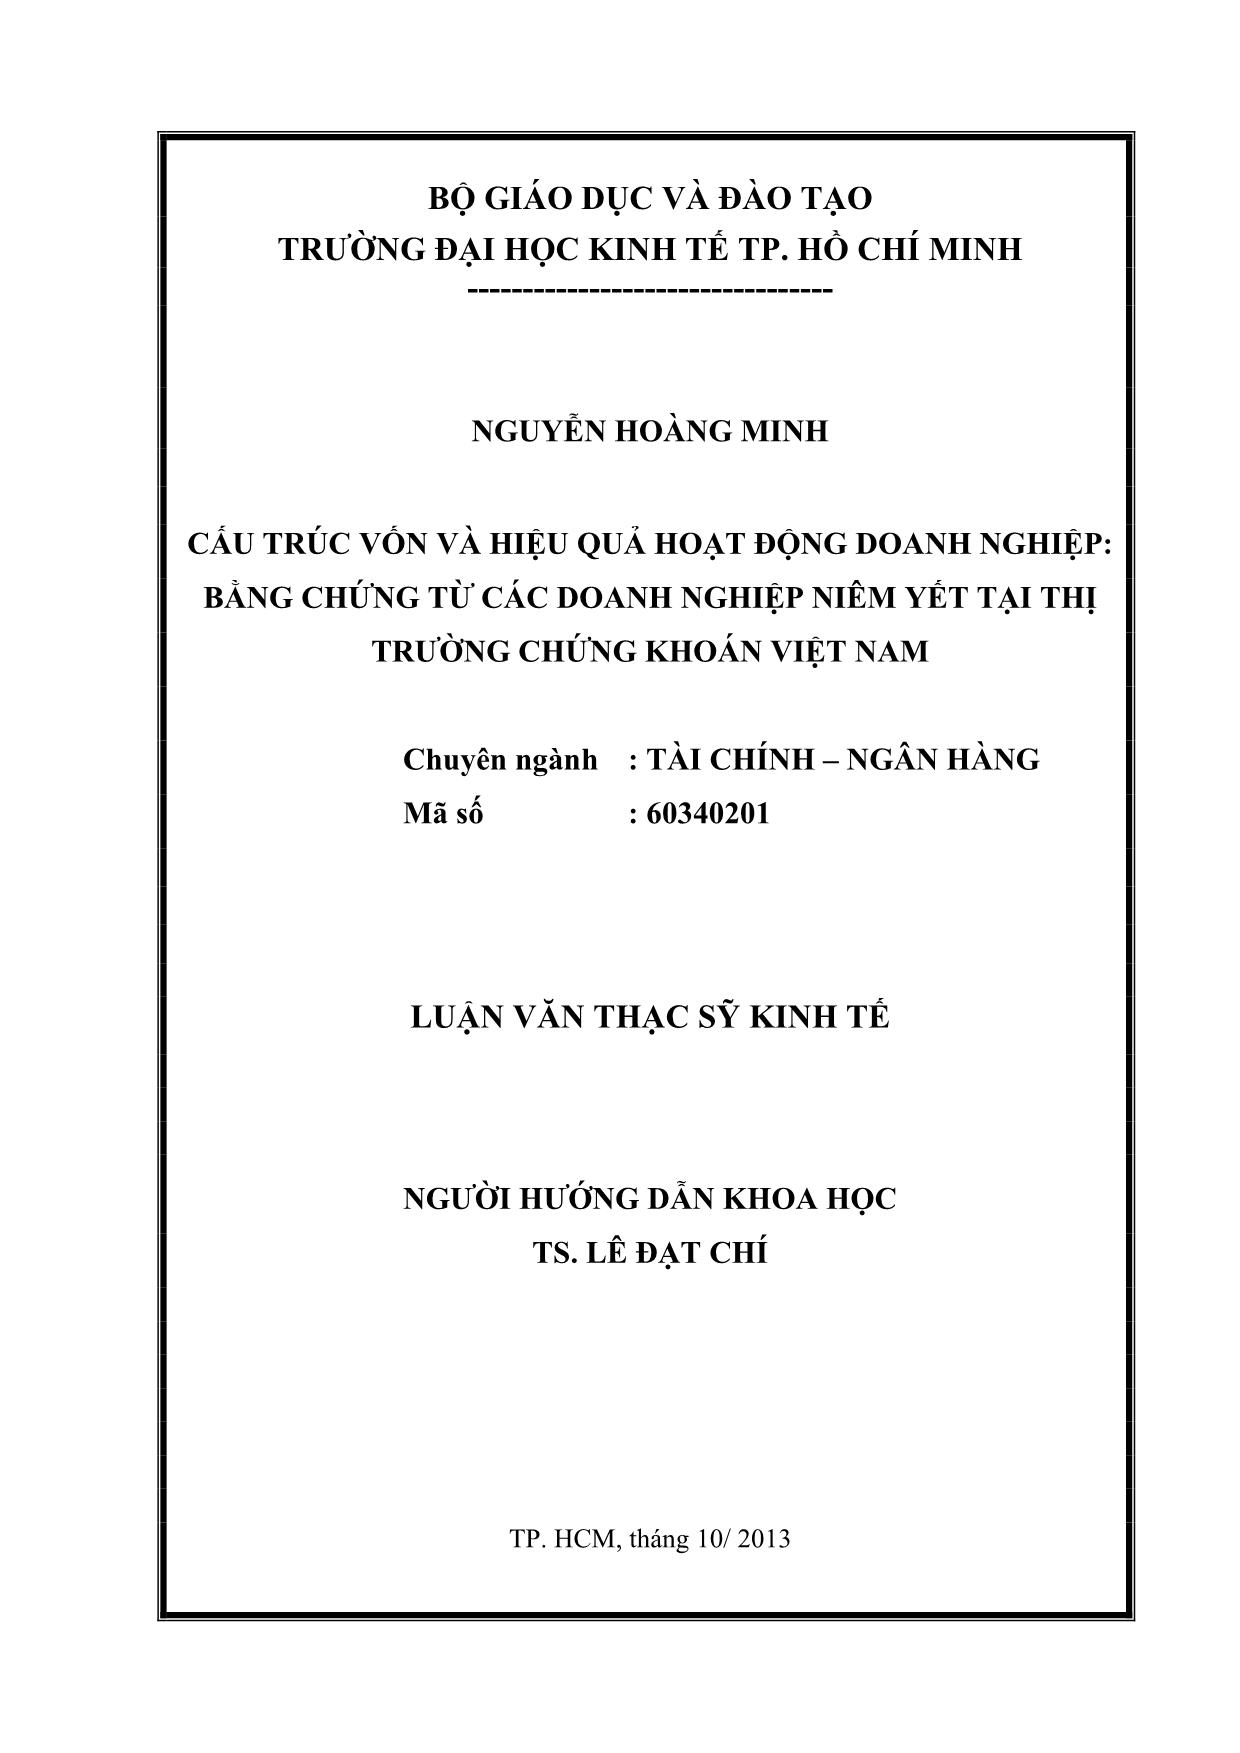 Cấu trúc vốn và hiệu quả hoạt động doanh nghiệp: bằng chứng từ các doanh nghiệp niêm yết tại thị trường chứng khoán Việt Nam trang 2